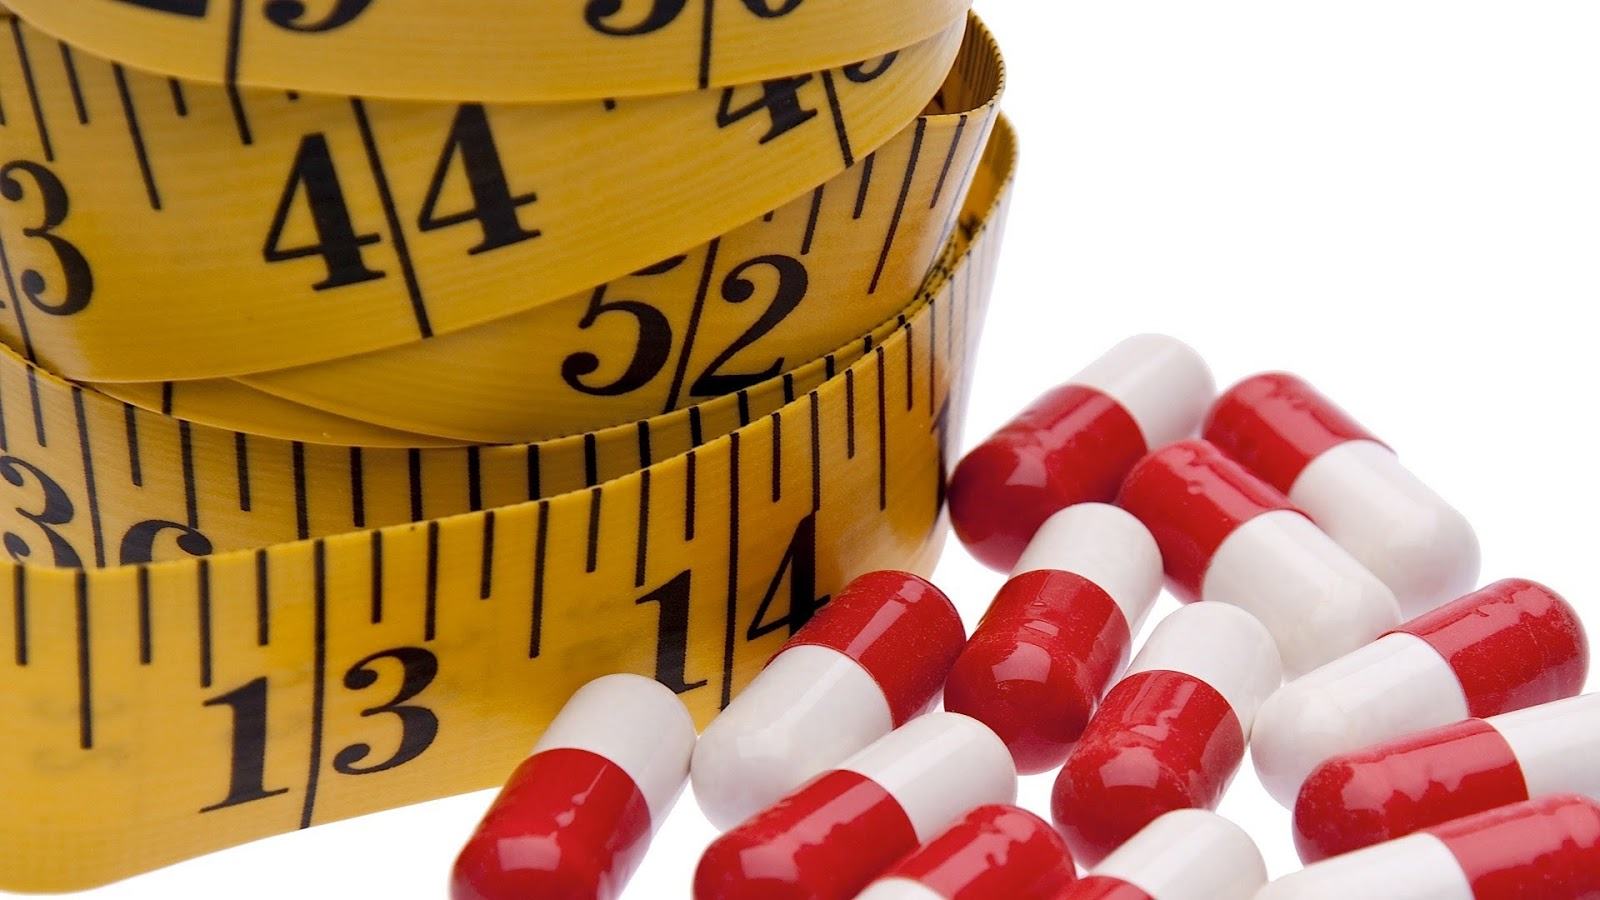 Top 15 thuốc giảm cân tốt nhất 2022 hiệu quả an toàn giá rẻ từ 500k